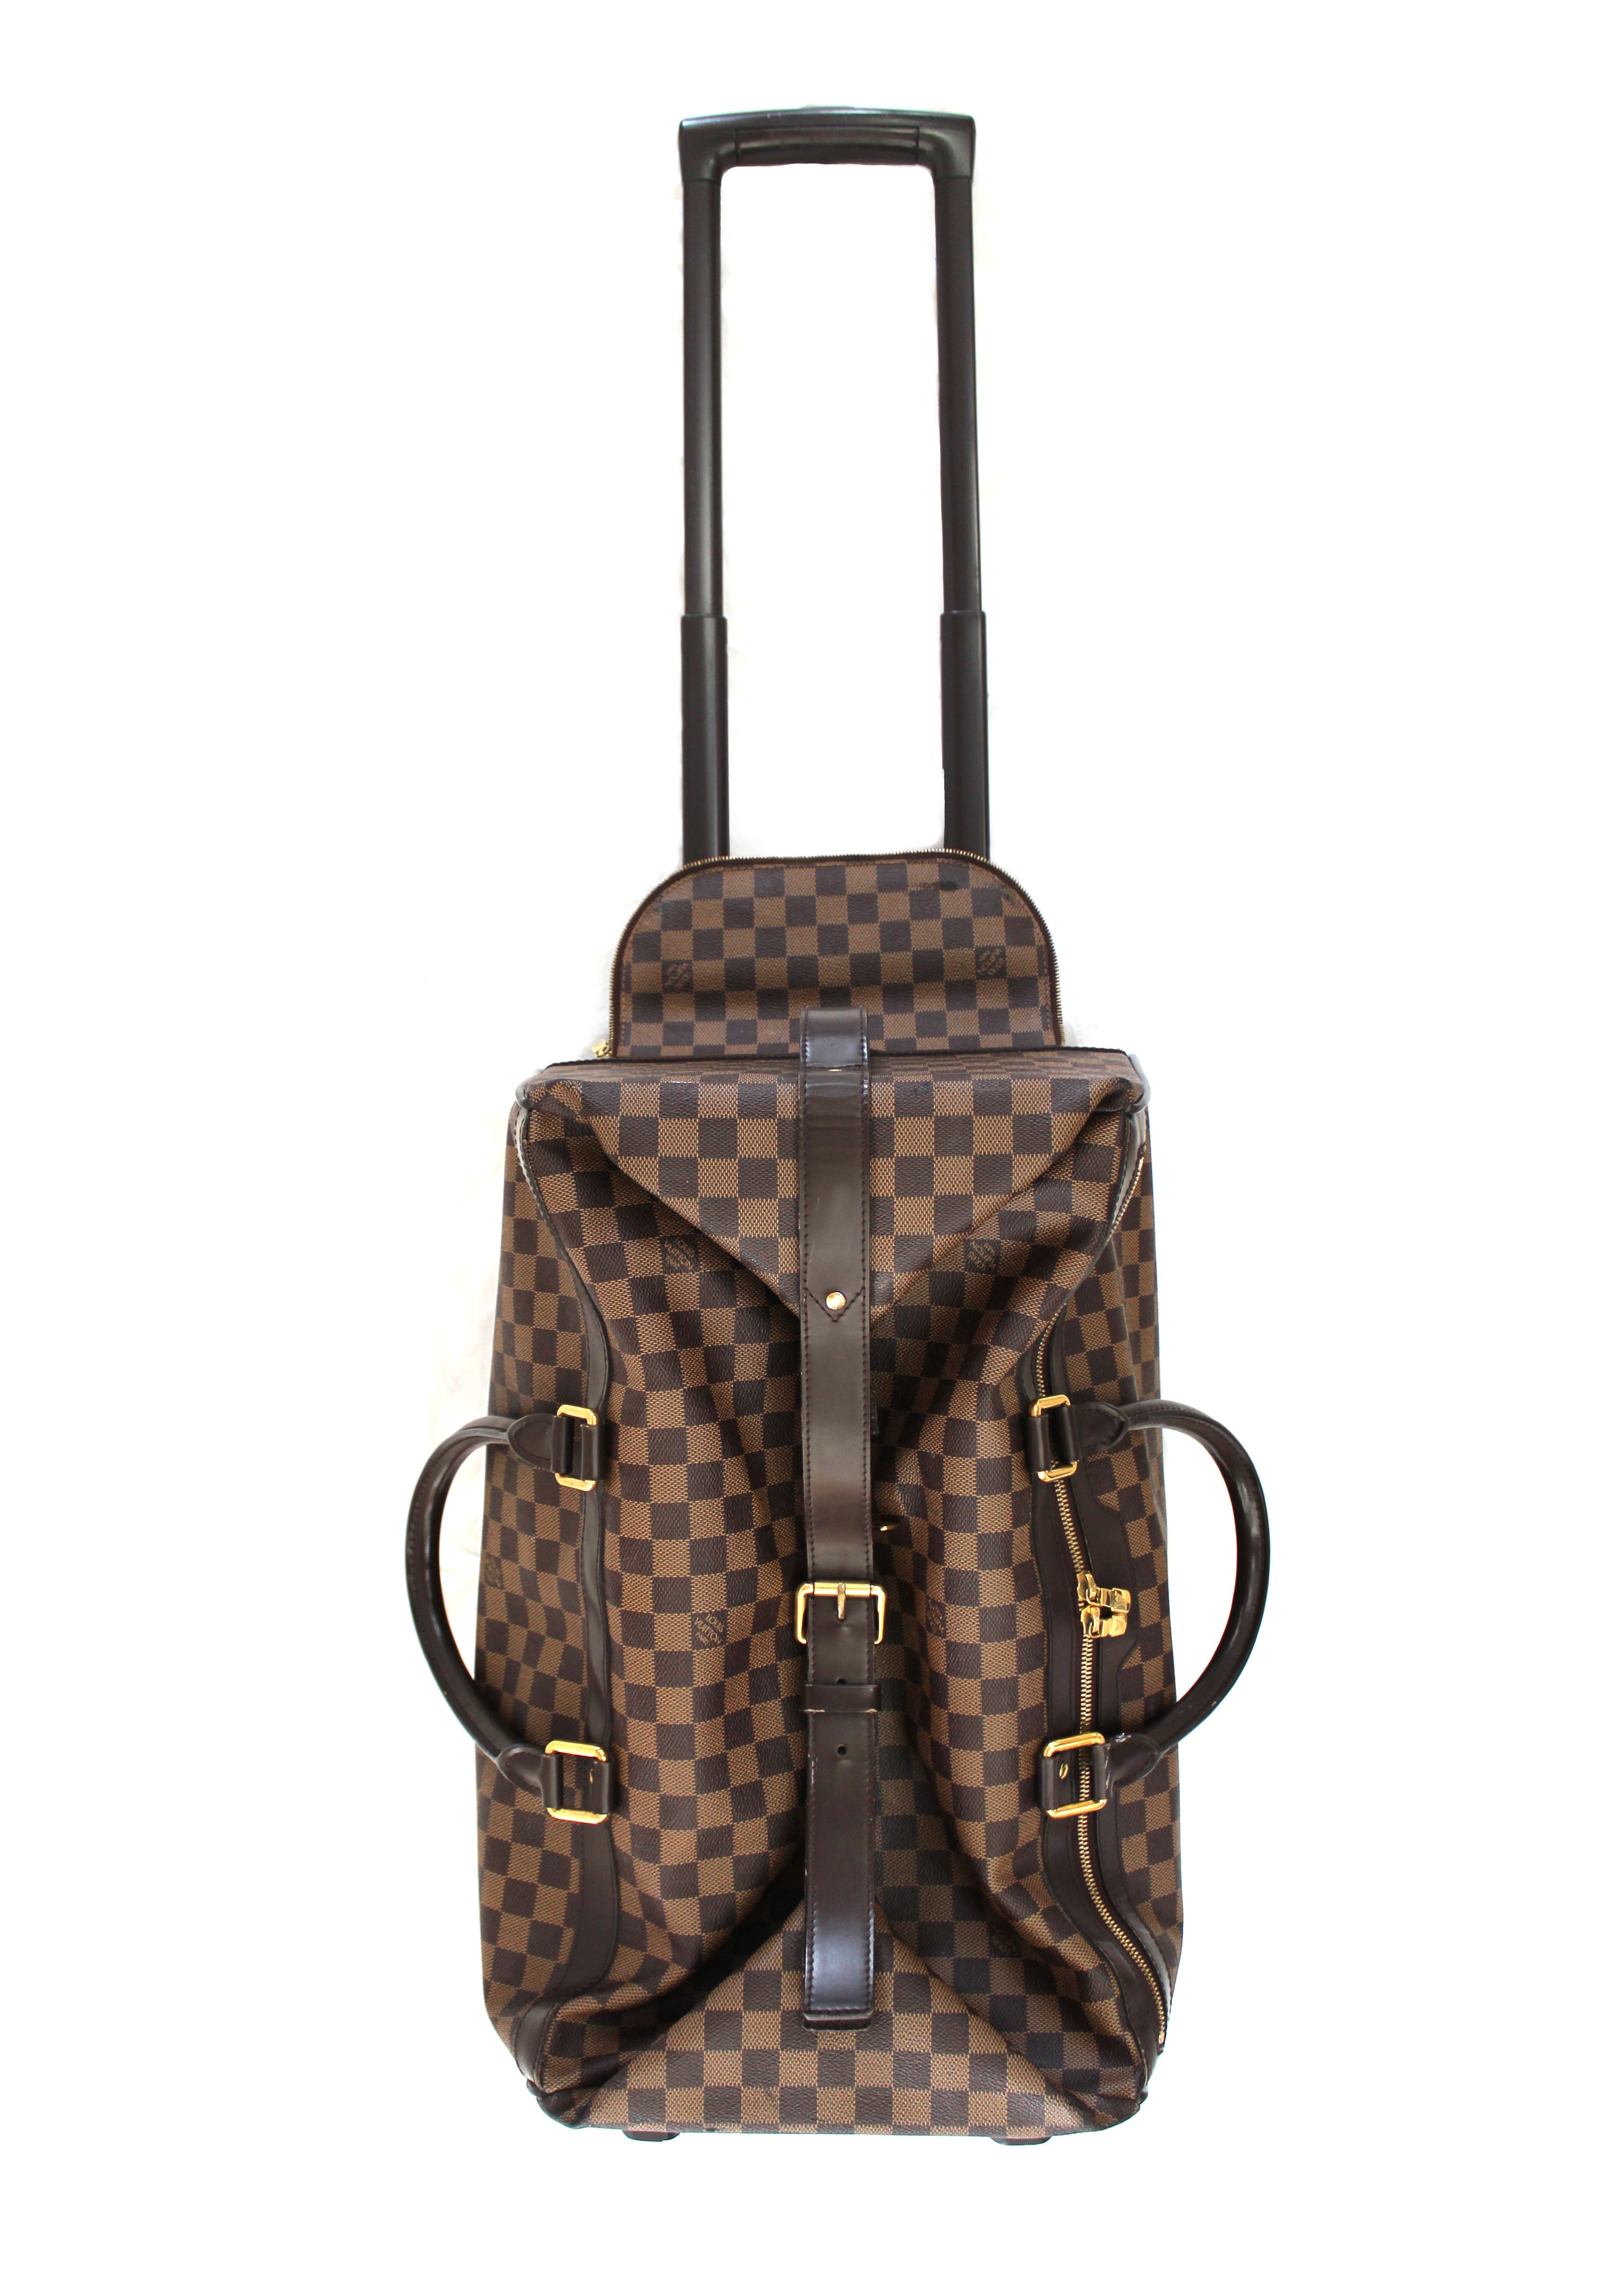 Authentic Louis Vuitton Suitcase